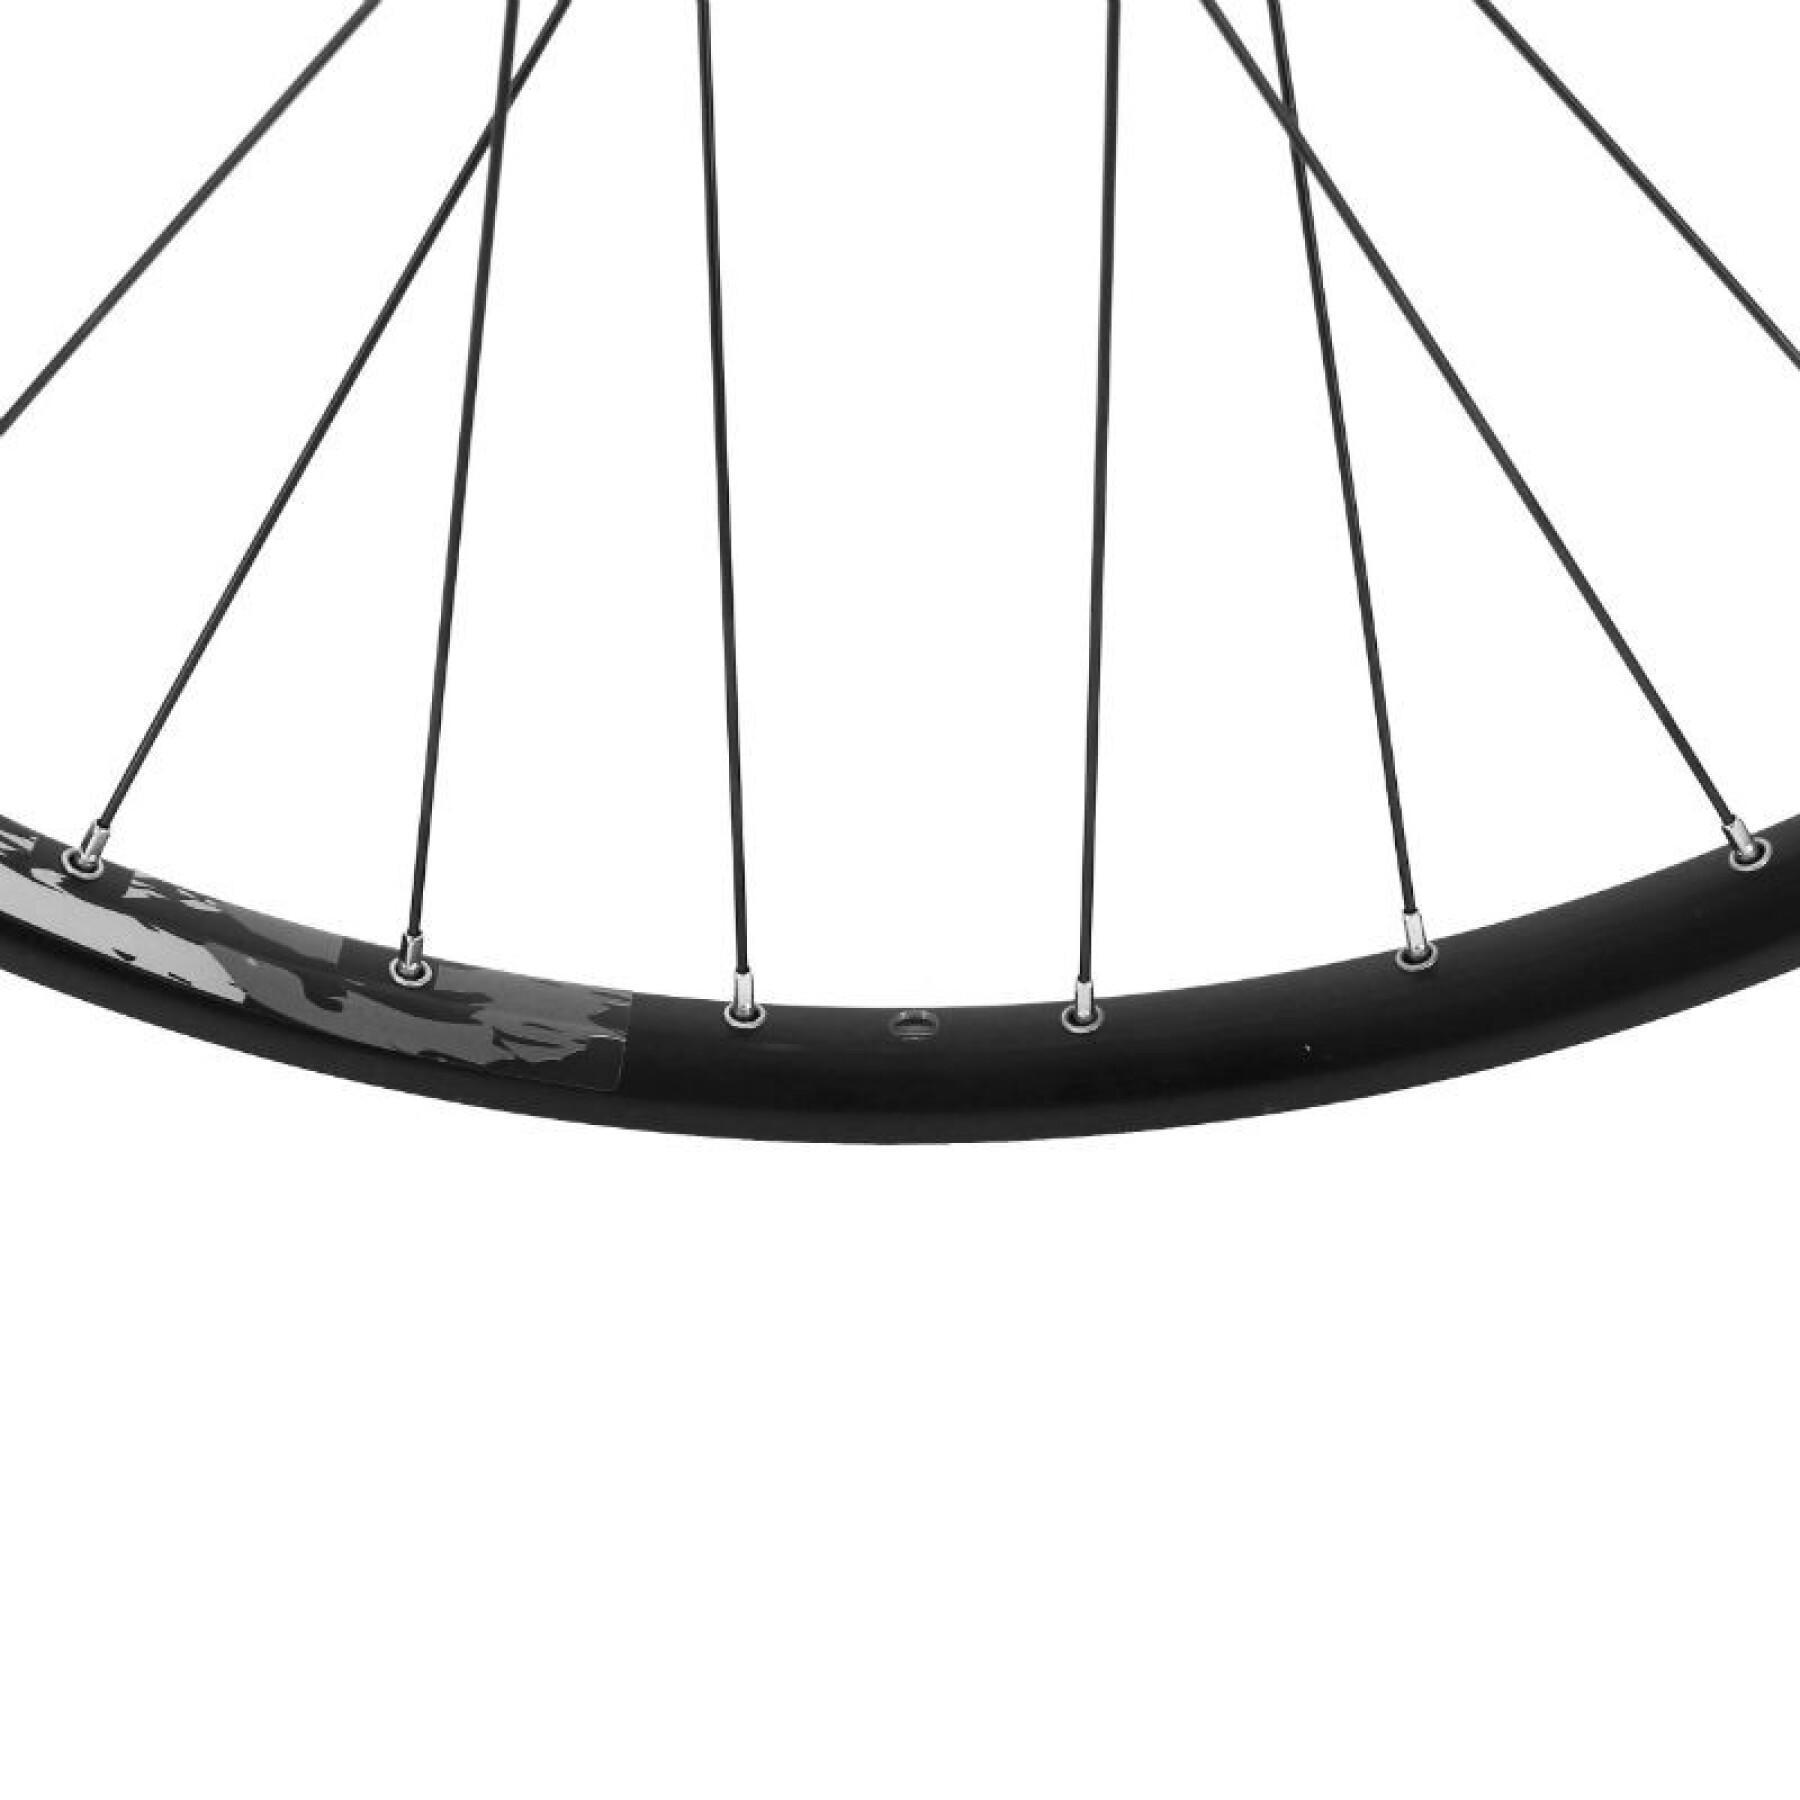 MTB-Fahrradvorderrad doppelwandige 6-Loch-Nabe - 21 mm innen und 27 mm außen Velox Karma Disc